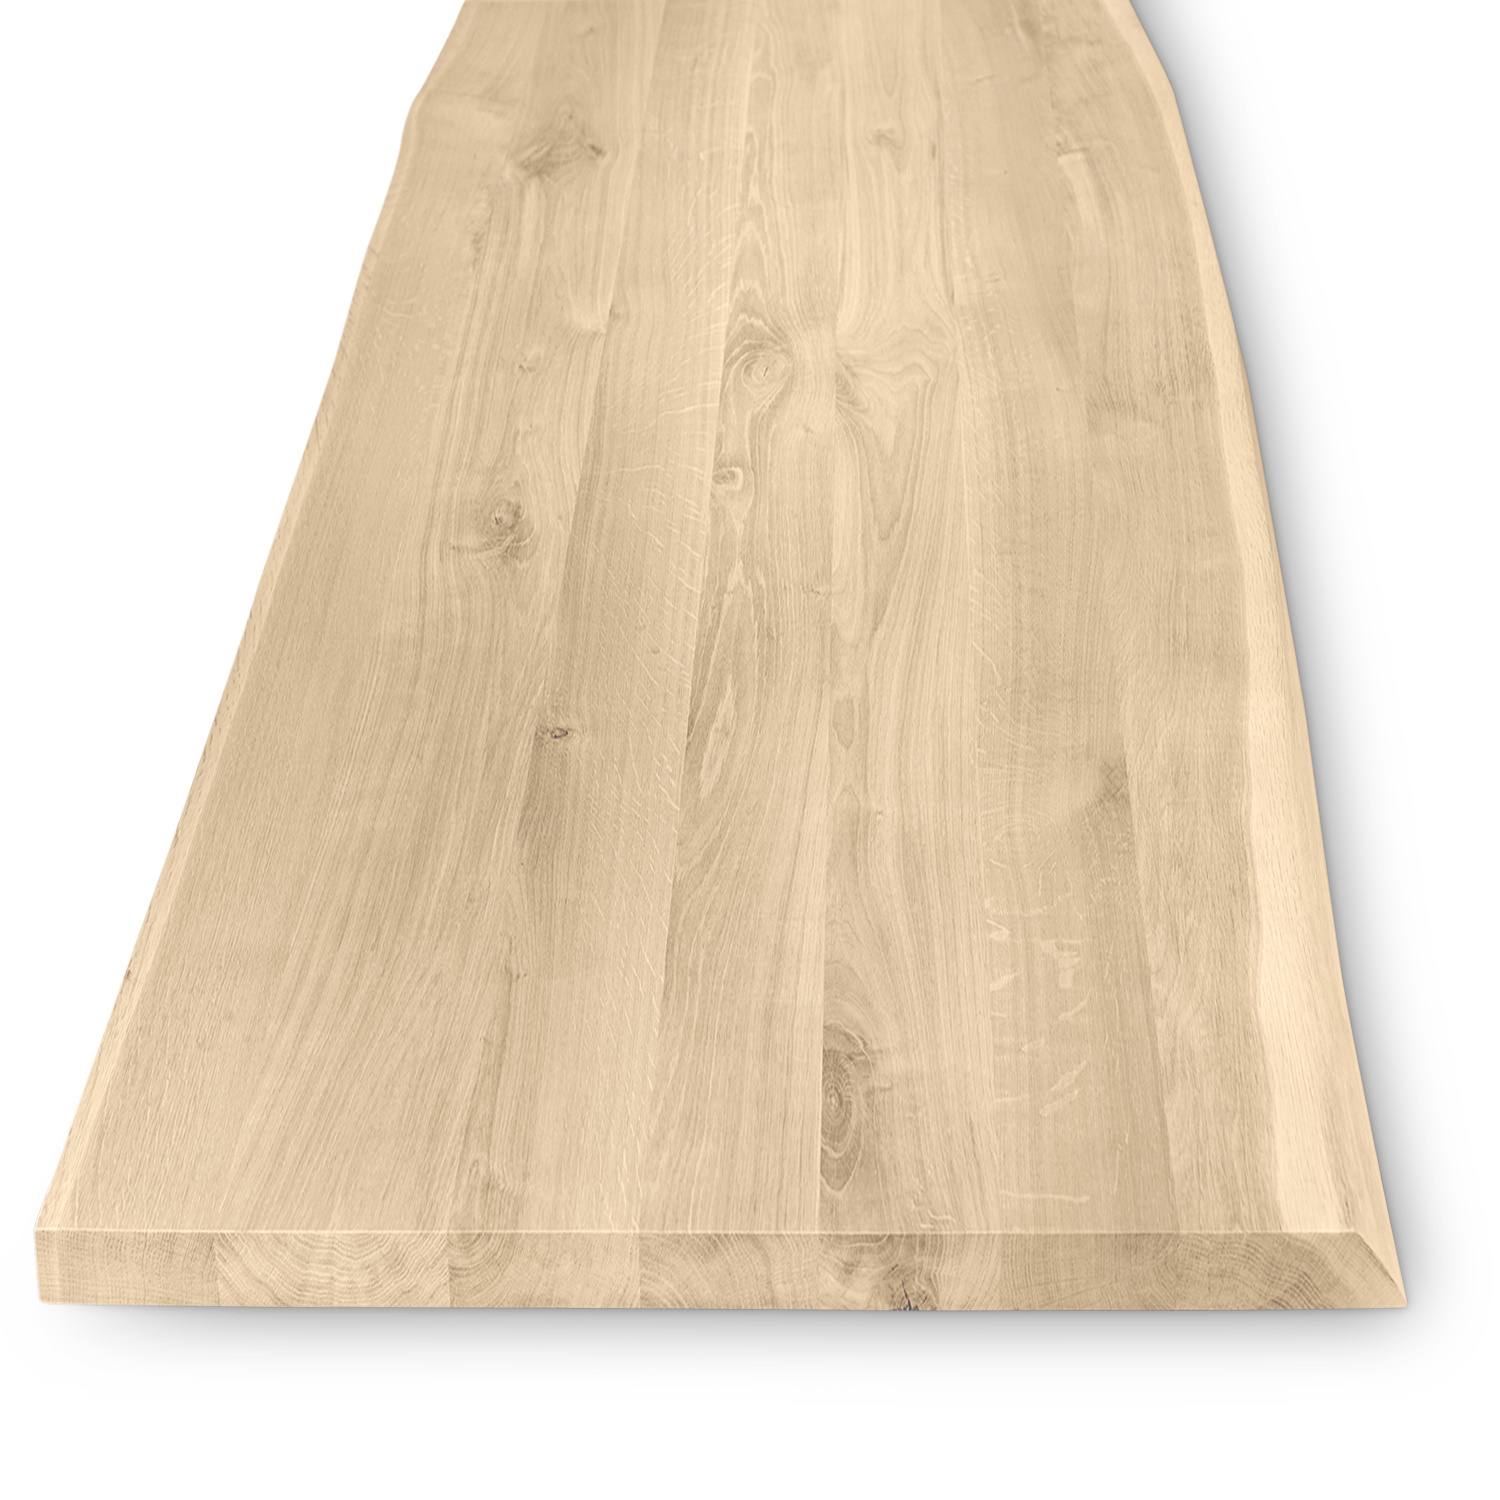  Tischplatte Wildeiche baumkante - 4 cm dick - verschiedene Größen - Asteiche (rustikal) - Eiche Tischplatte mit  natürlichen Baumkant - Verleimt & künstlich getrocknet (HF 8-12%)